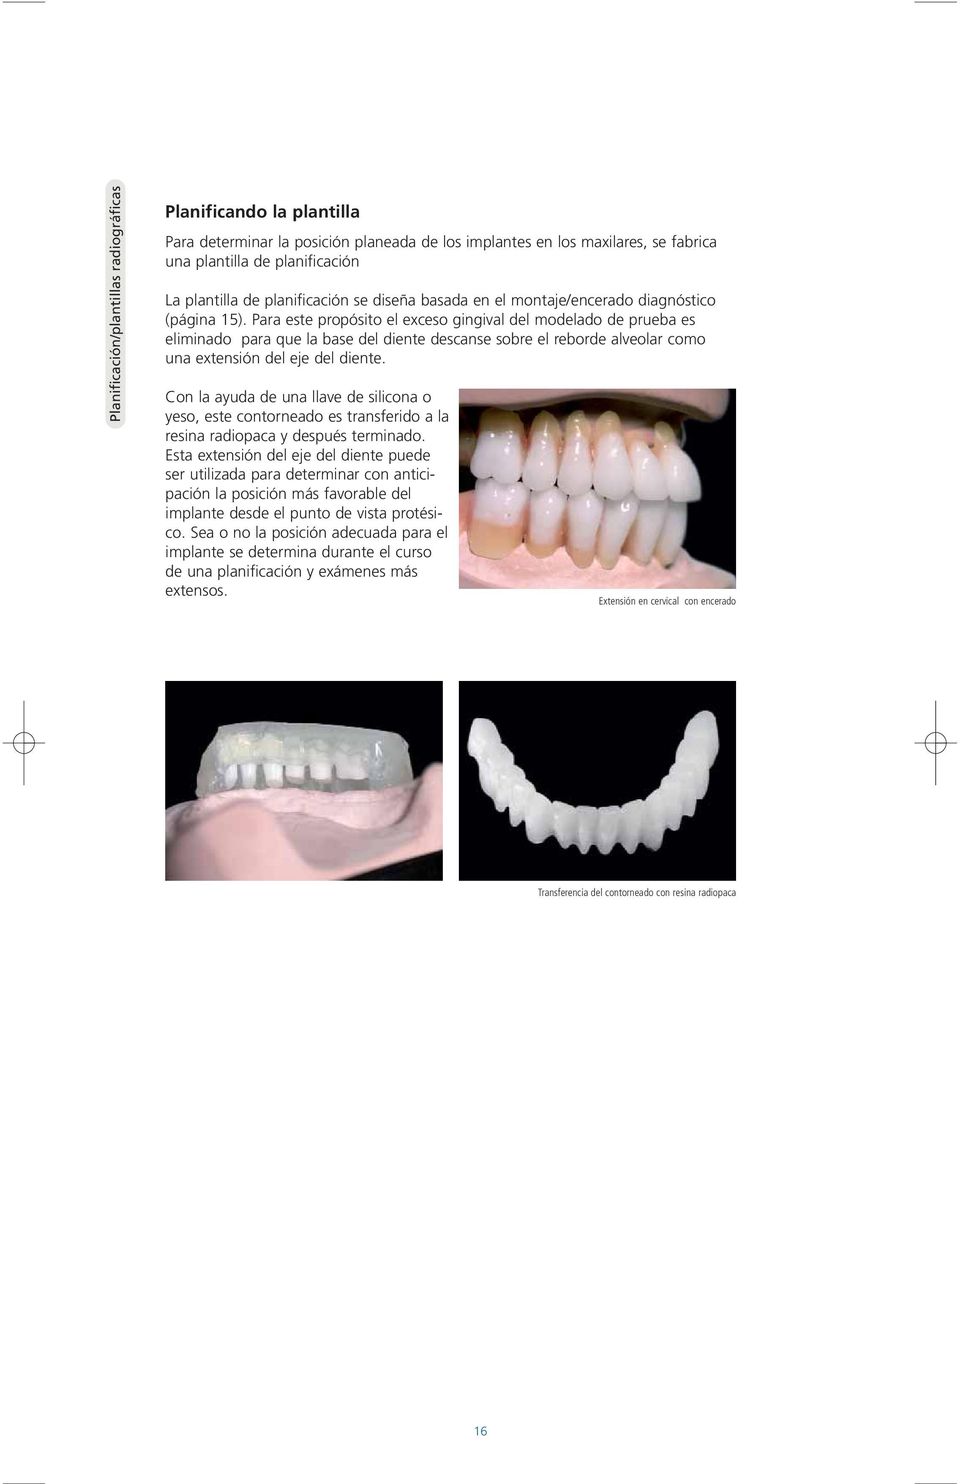 Para este propósito el exceso gingival del modelado de prueba es eliminado para que la base del diente descanse sobre el reborde alveolar como una extensión del eje del diente.